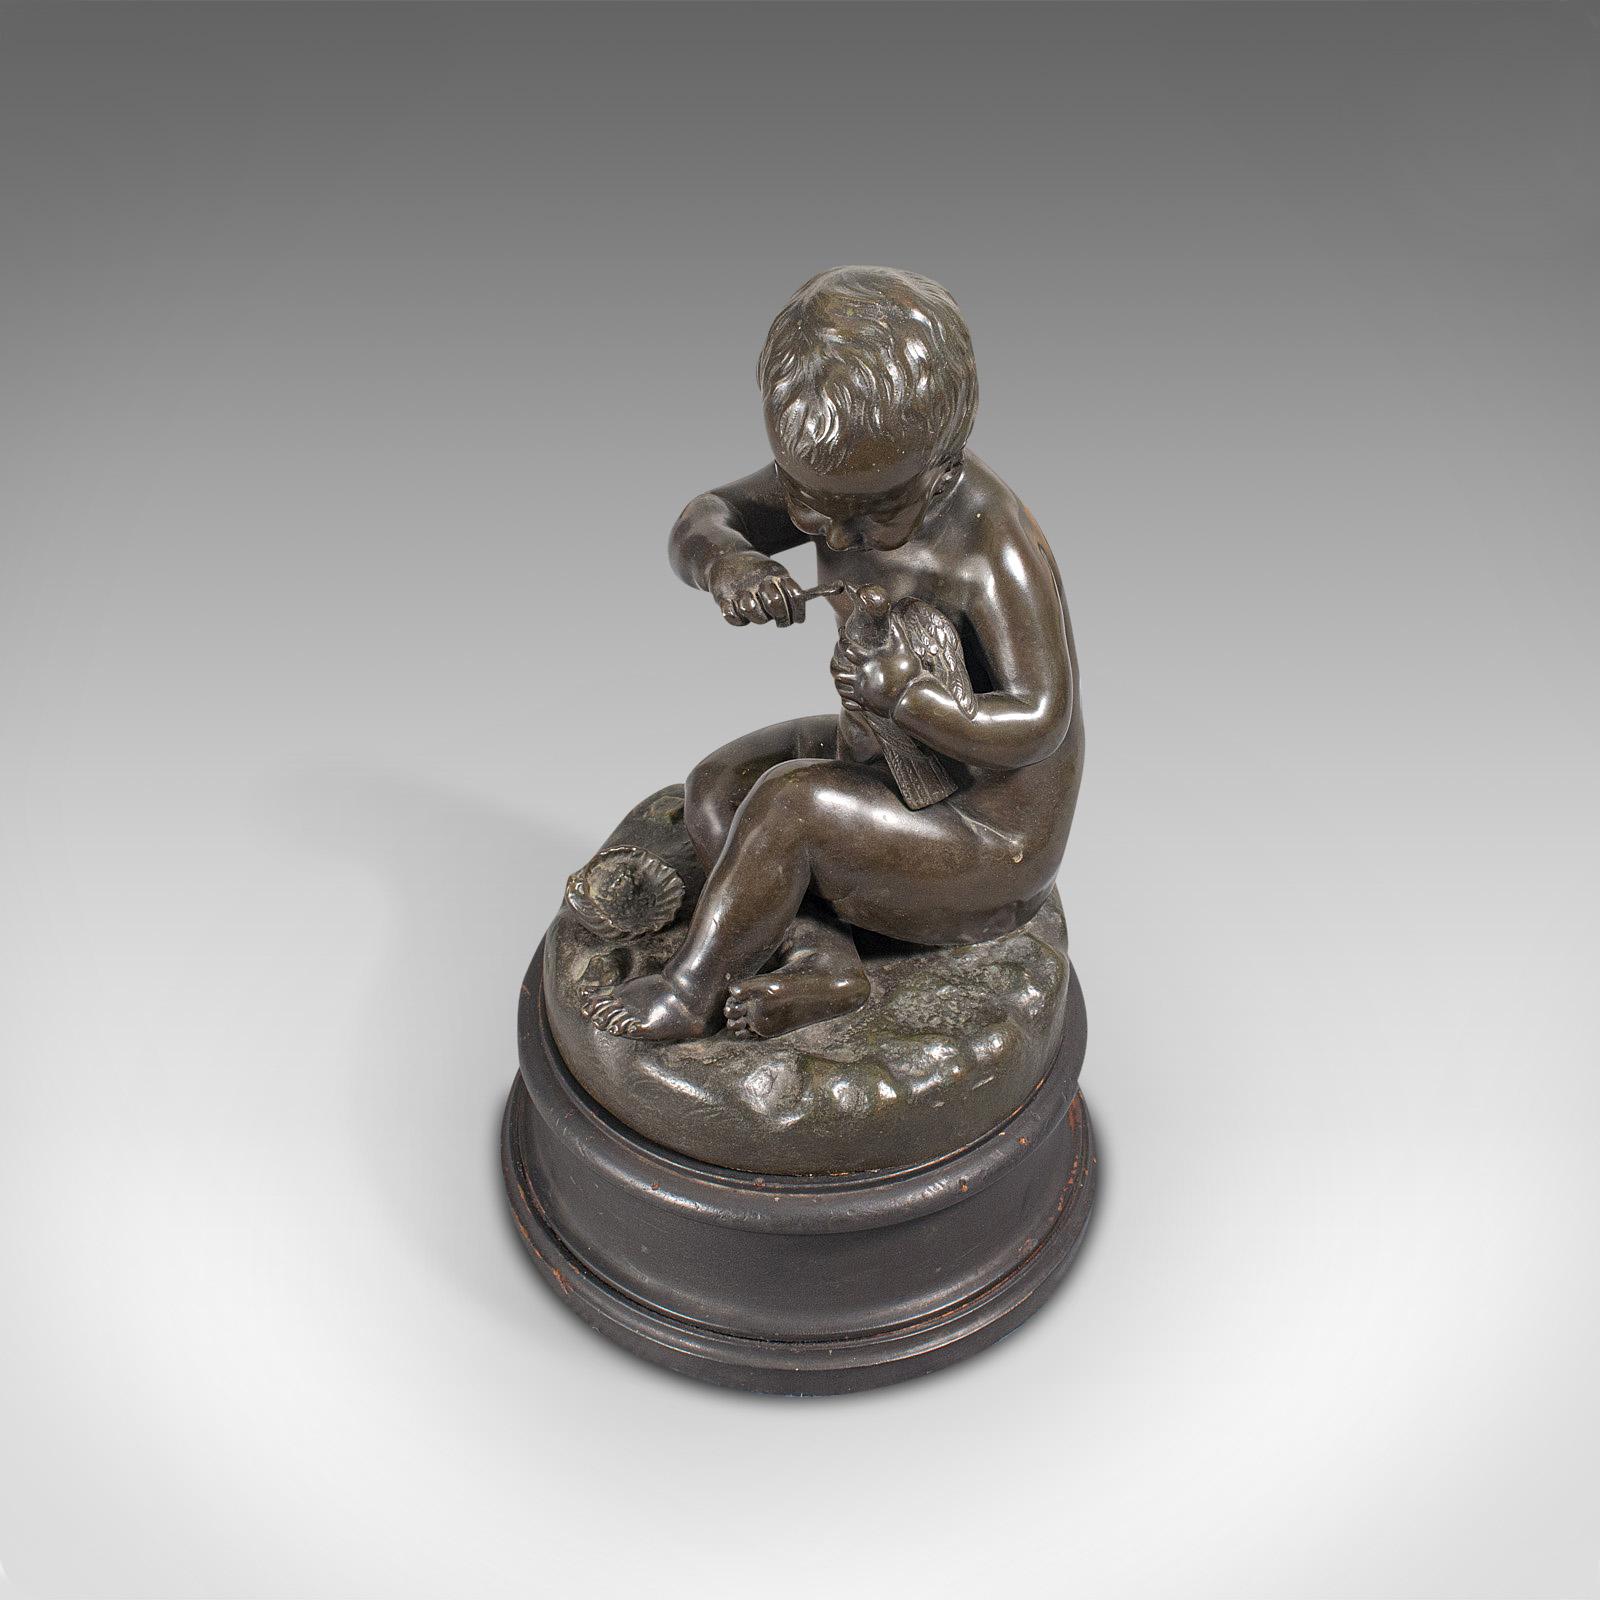 Antique Putto Statue, French, Bronze, Cherub Figure, Late 19th Century For Sale 3